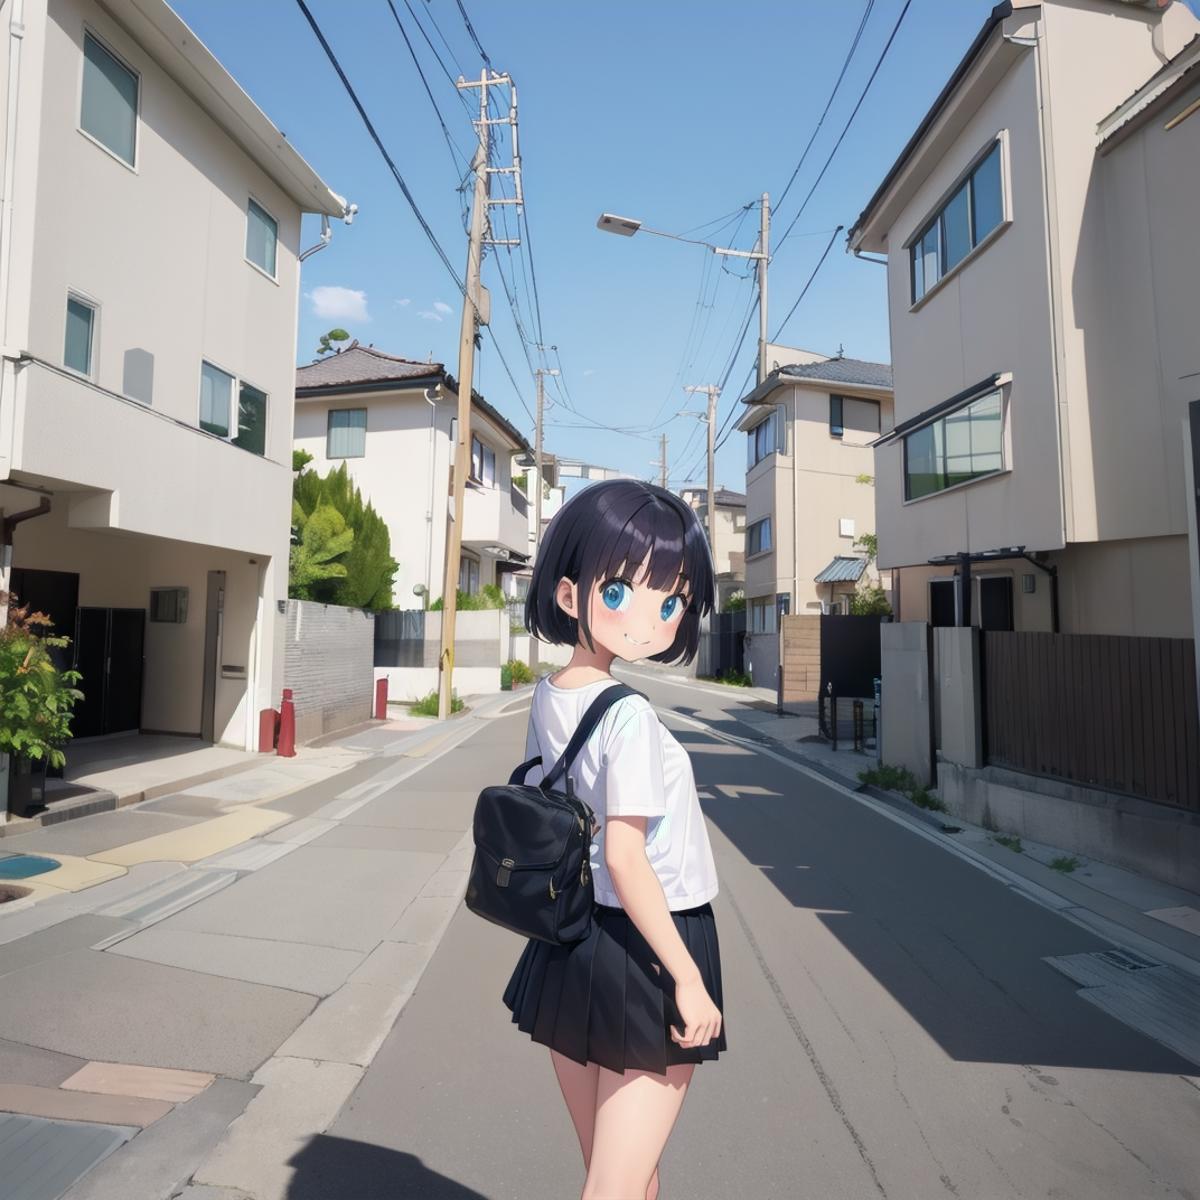 日本の住宅街の道路 / Residential streets in Japan SD15 image by swingwings